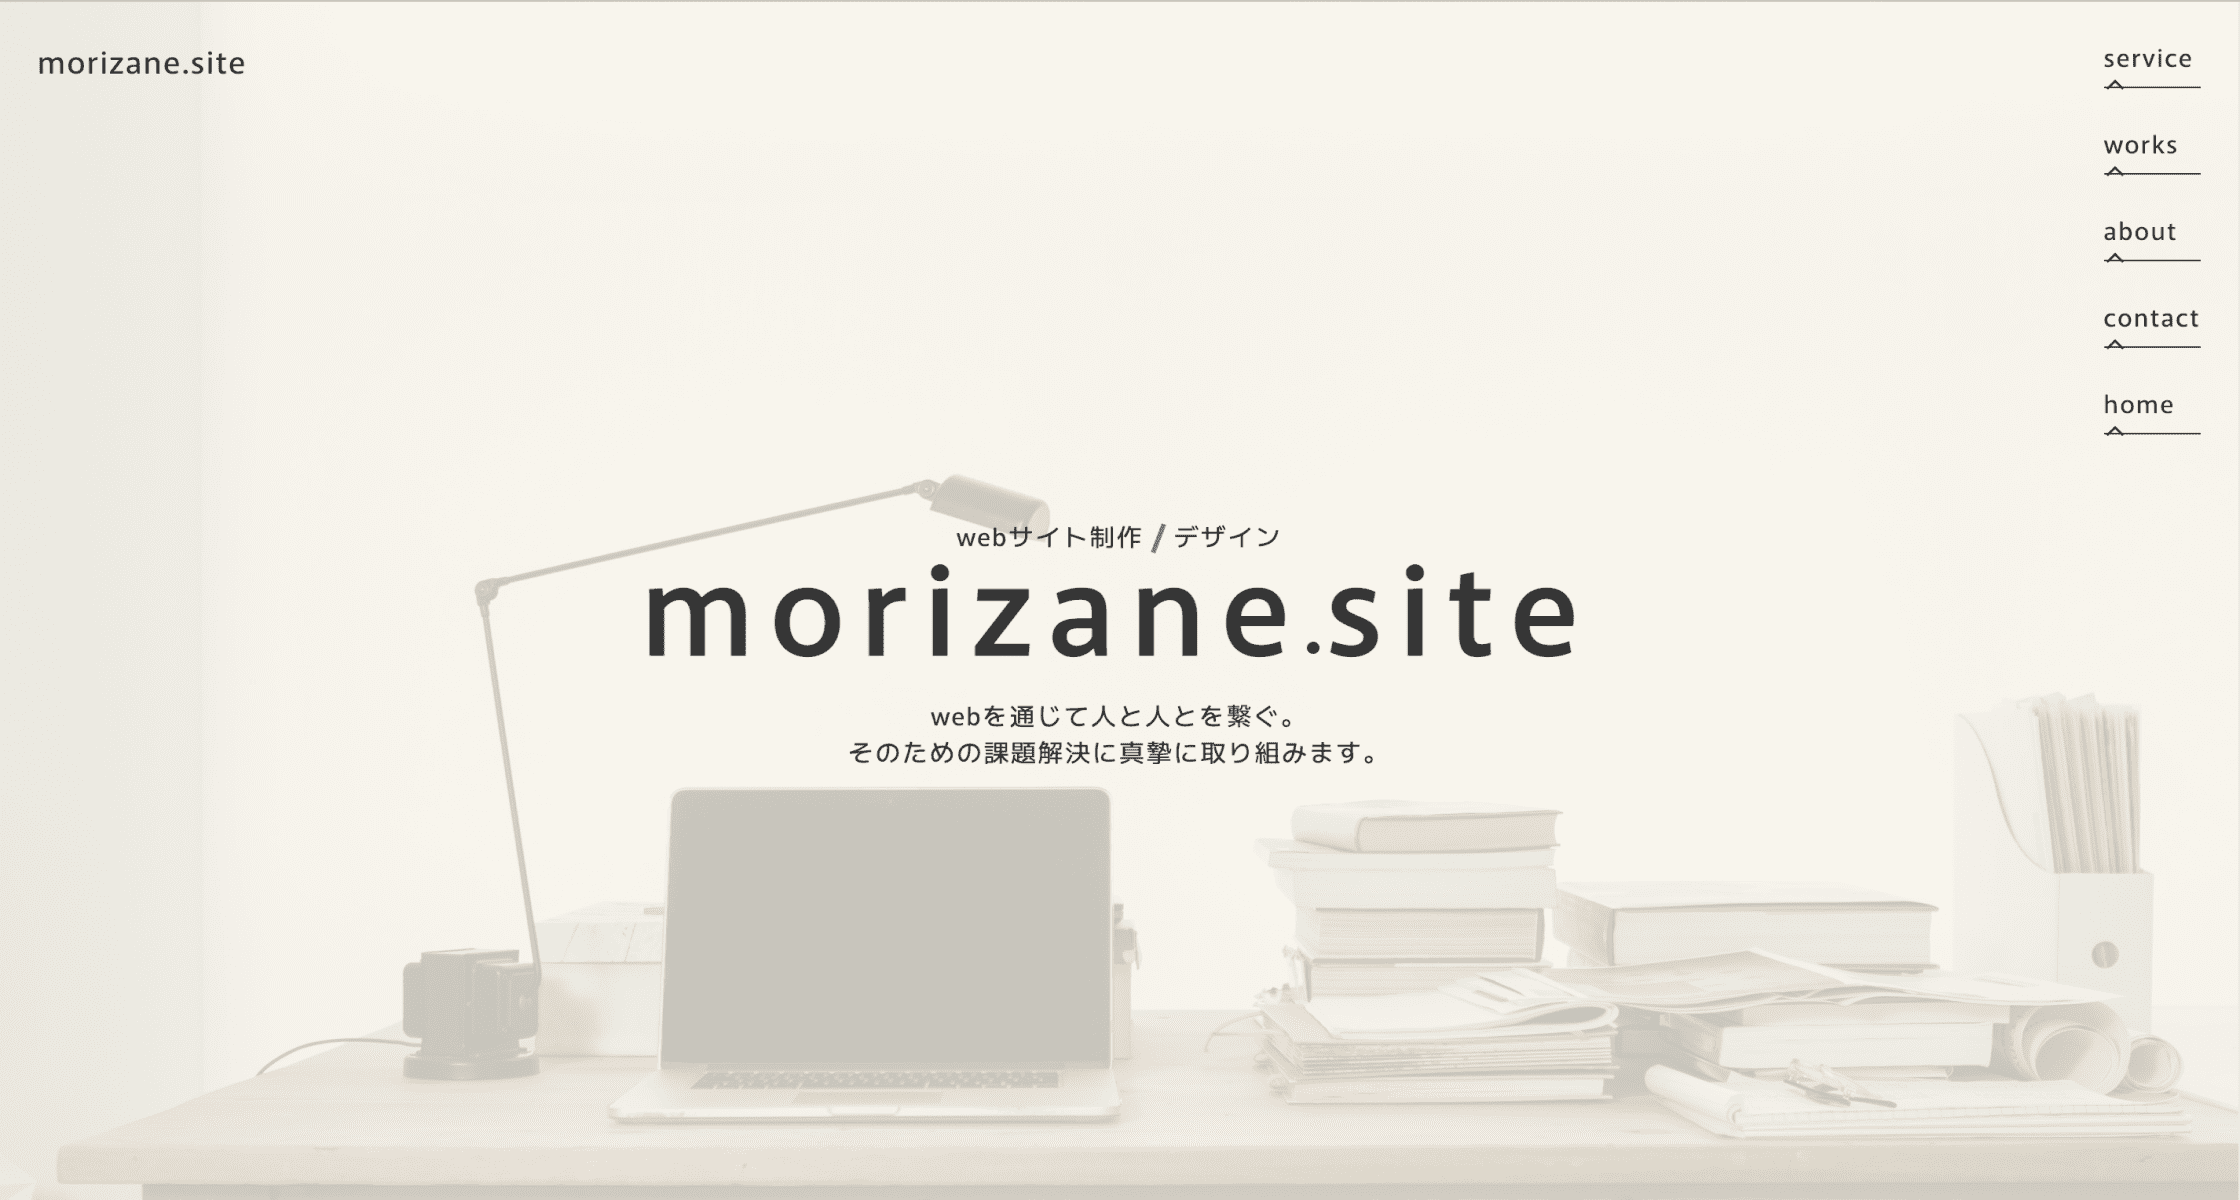 ポートフォリオサイト「morizane.site」